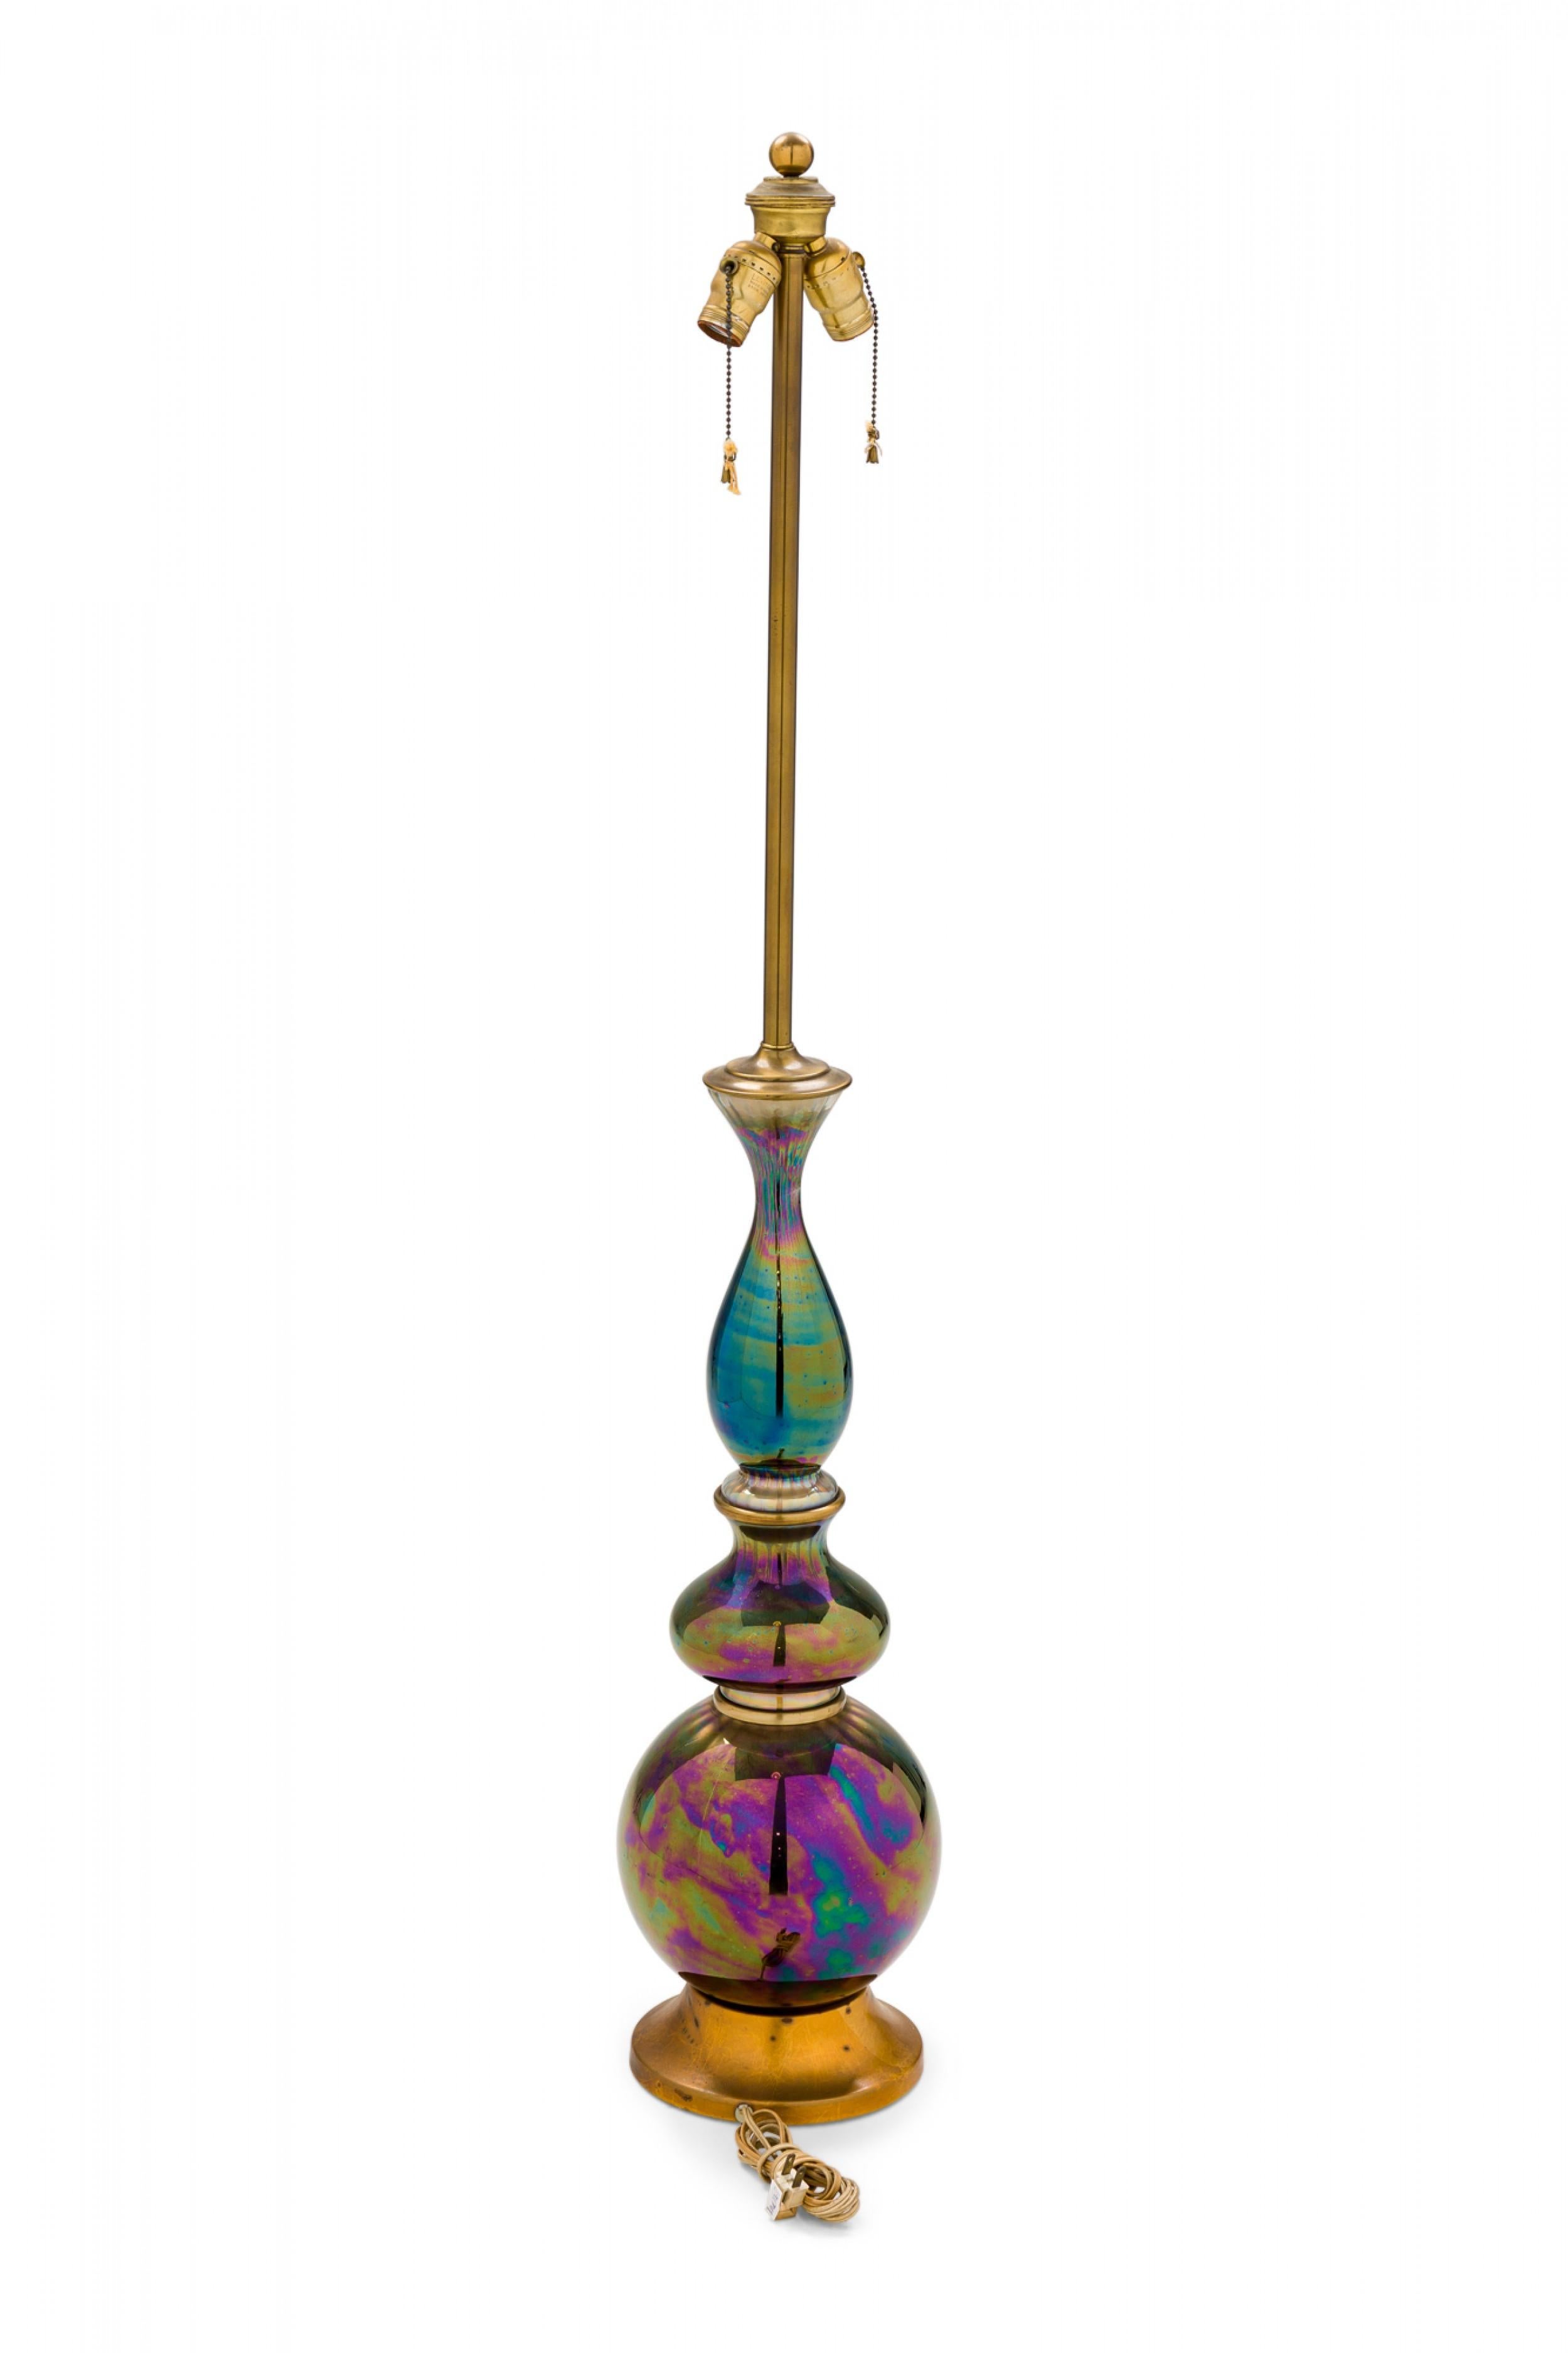 PAIRE de lampes de table en verre irisé vert / bleu / violet du milieu du siècle dernier (années 1950) de forme globulaire en forme de flèche avec des prises d'interrupteur fonctionnelles en laiton et des poignées perlées, montées sur des supports